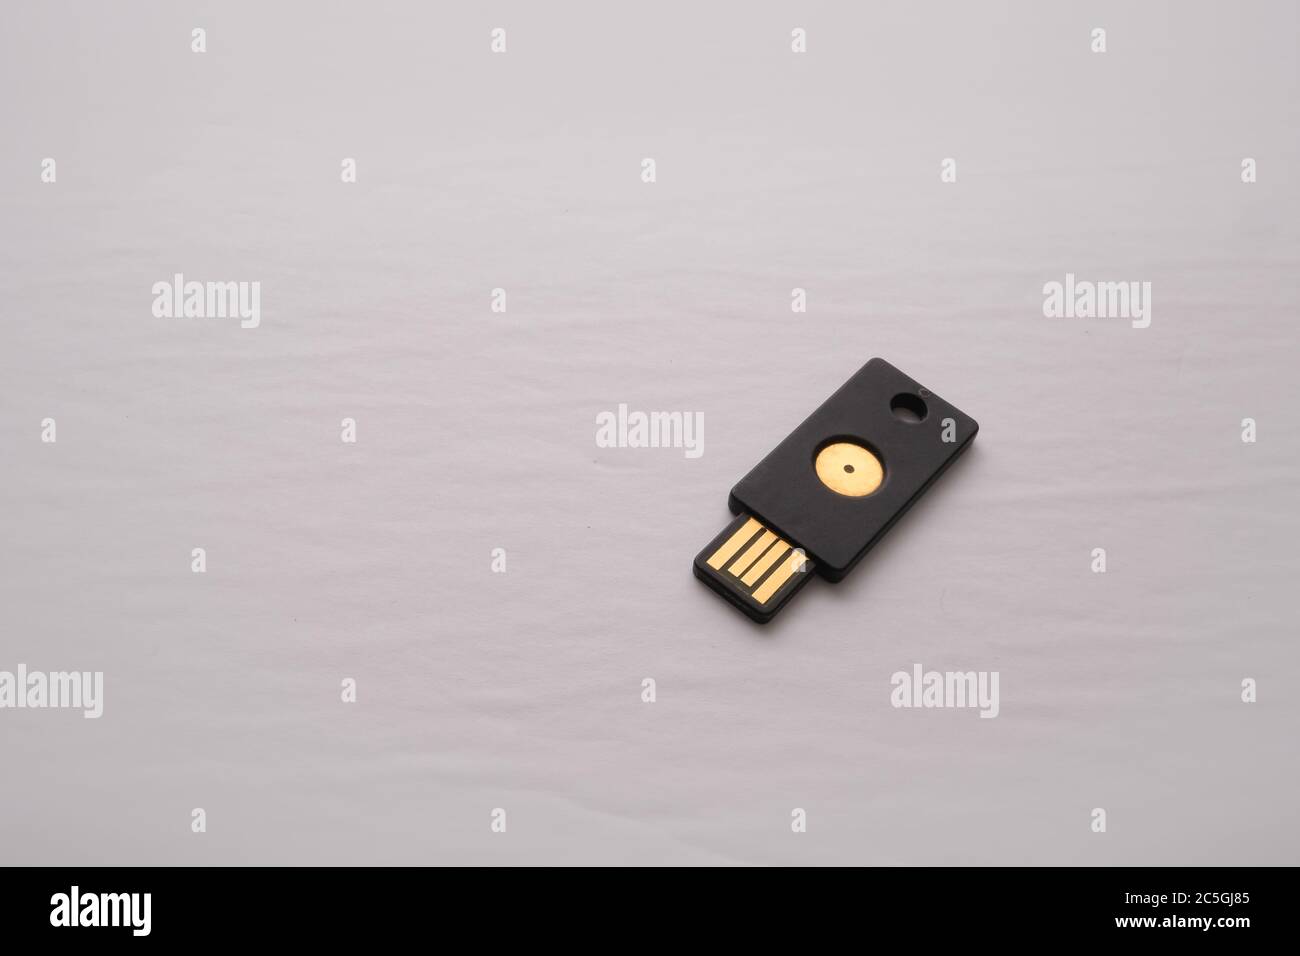 Ein isoliertes USB-Gerät mit einem Sicherheitsschlüssel wird für die zwei-Faktor-Authentifizierung verwendet, um Anmeldungen und Online-Autorisierung eine Sicherheitsebene hinzuzufügen. Stockfoto